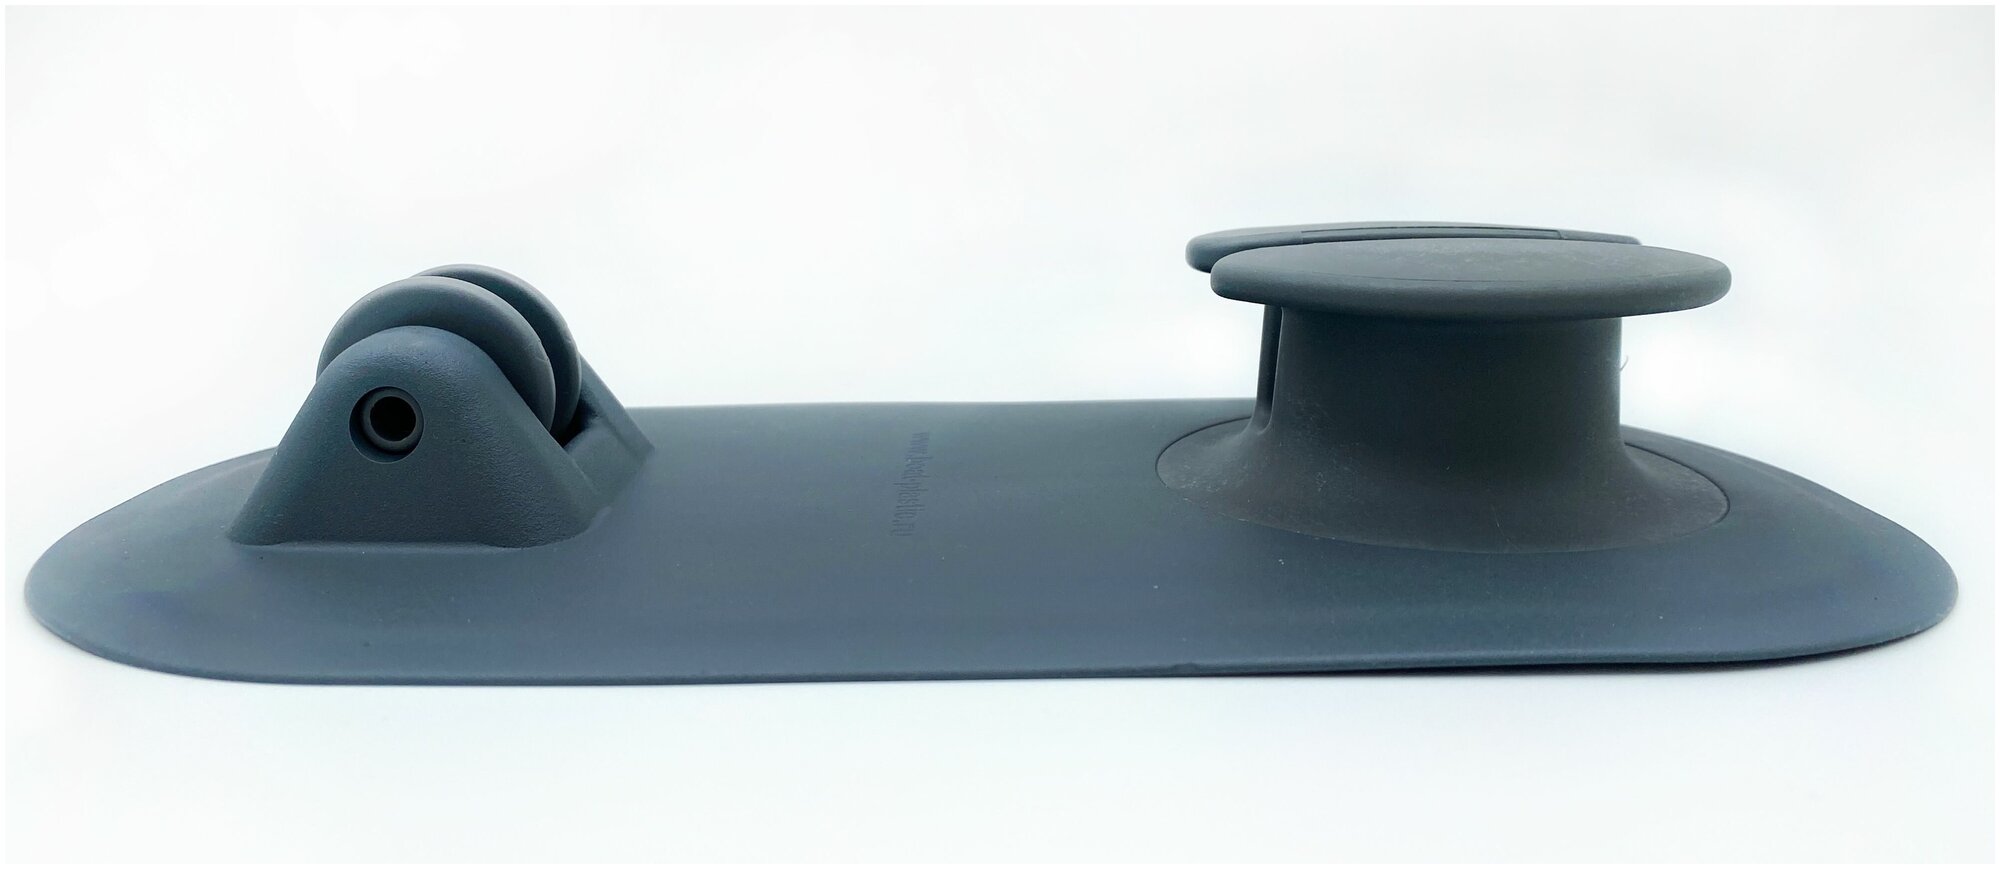 Якорный рым с роликом (роульсом) для лодки ПВХ, для фала/шнура диаметром 5-8 мм (серый)